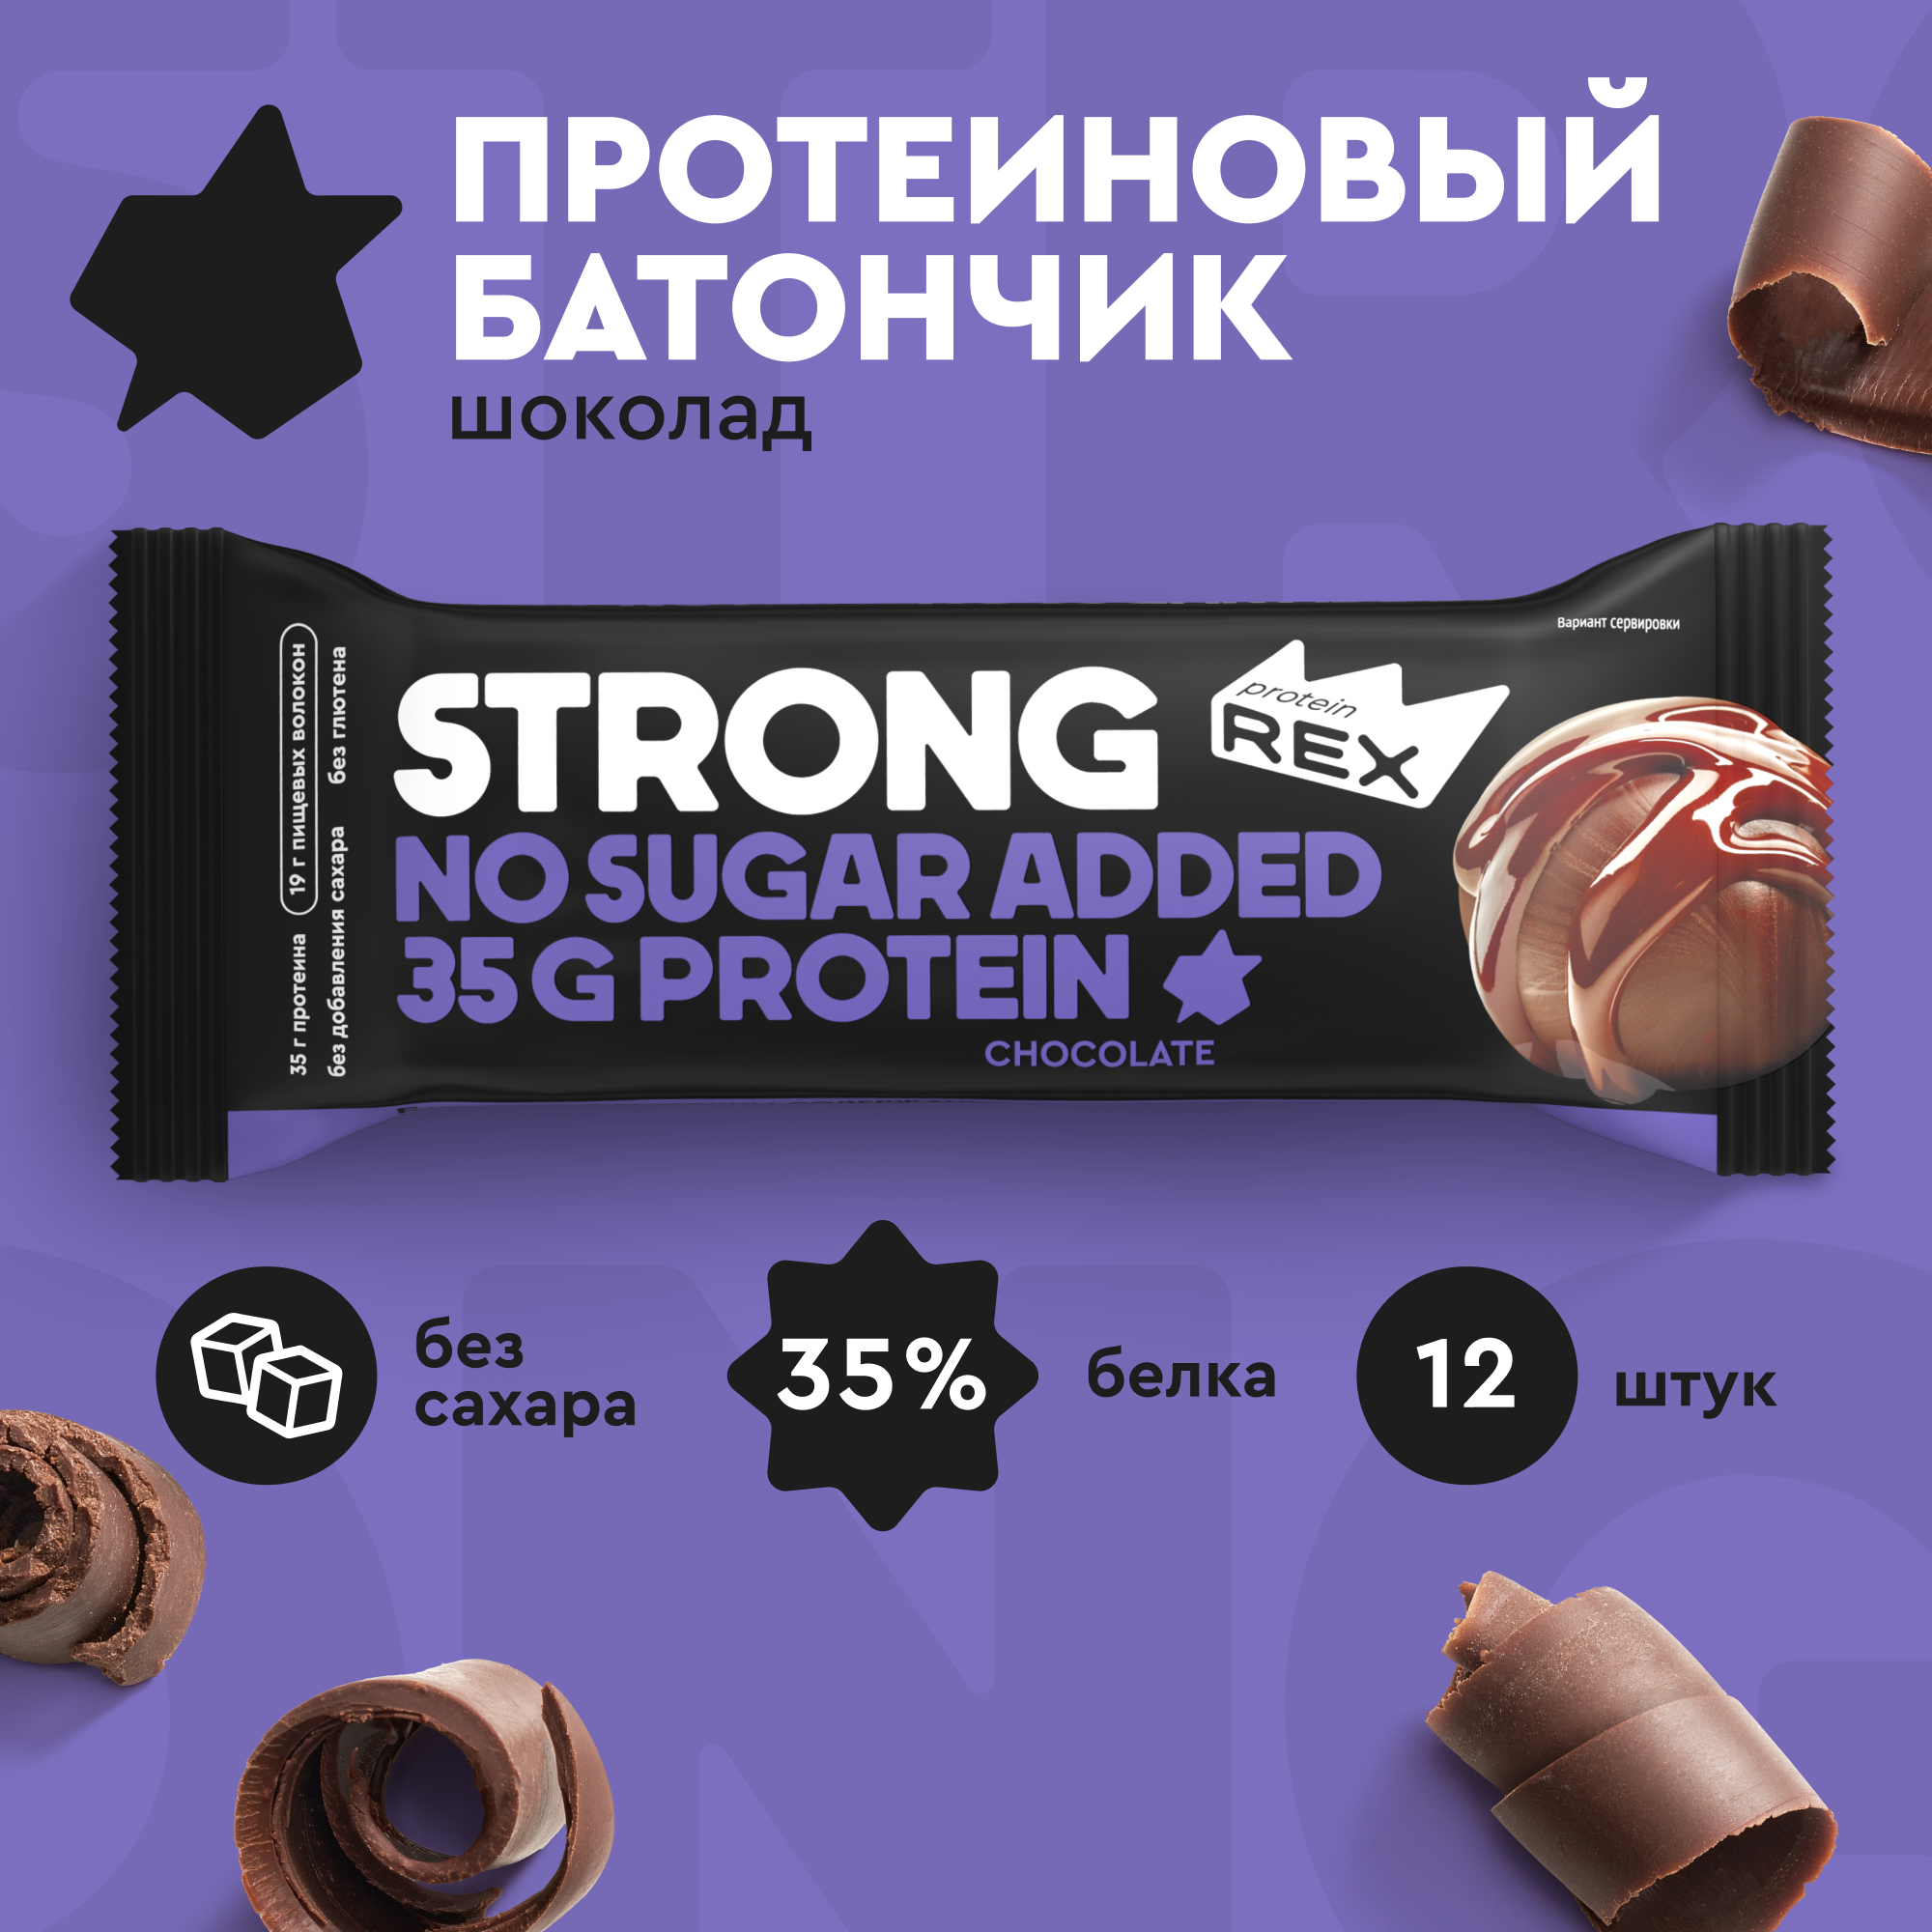 Протеиновые батончики ProteinRex STRONG Шоколад, 12 шт х 100 г, 330 ккал с высоким содержанием протеина, ПП еда, спортивные батончики без сахара